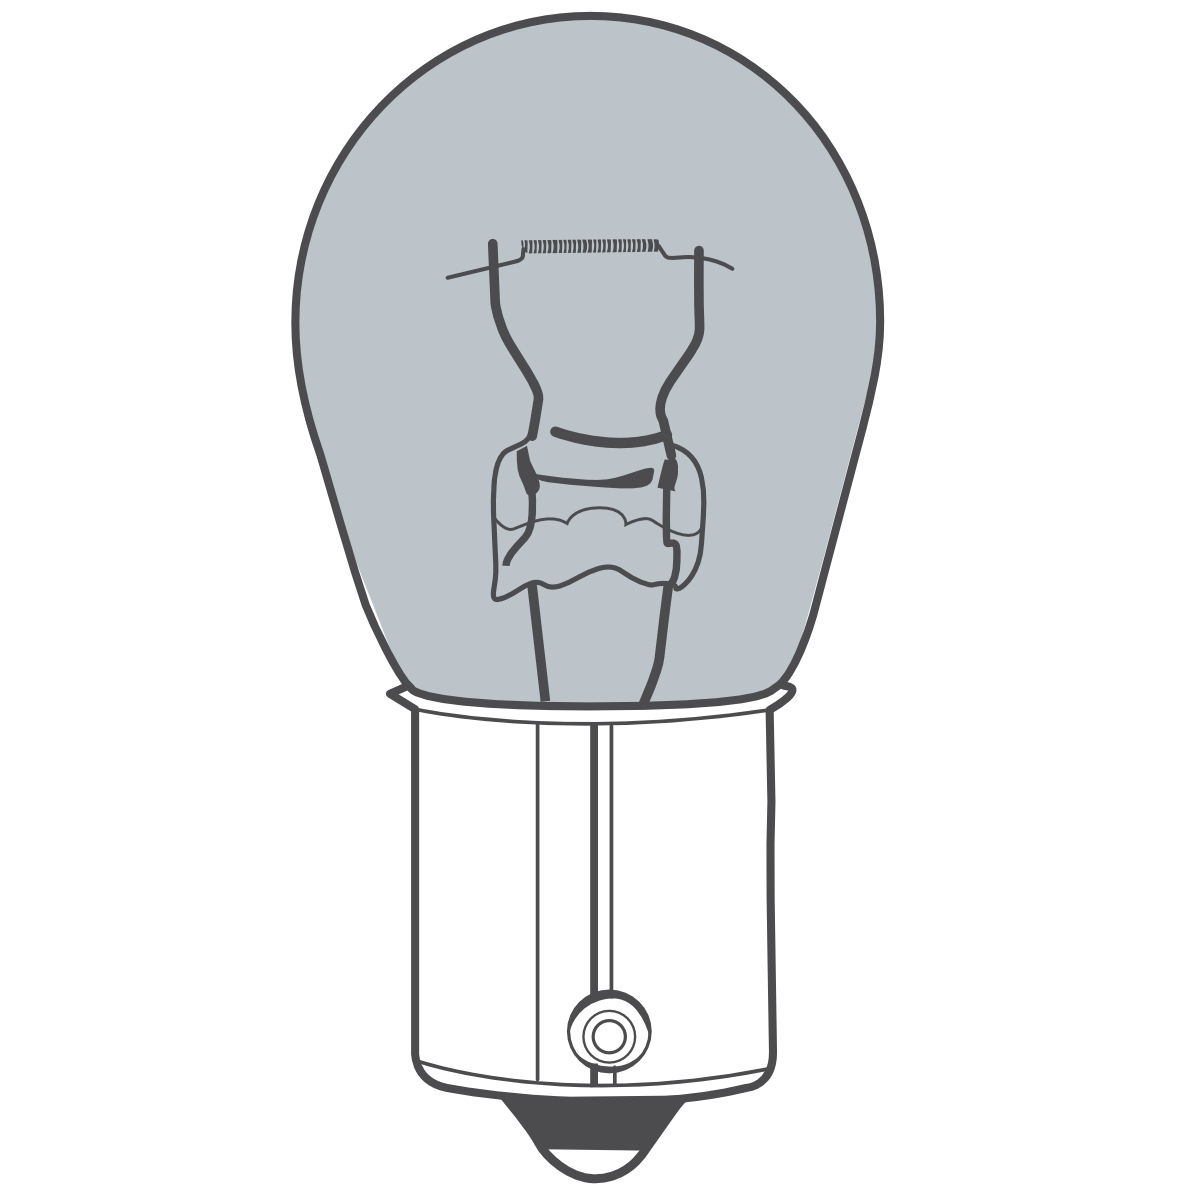 Auto-Lampen-Discount - H7 Lampen und mehr günstig kaufen - 10x BREHMA PY21W 12V  21W orange Blinkerlampe Kugel Lampe BAU15s